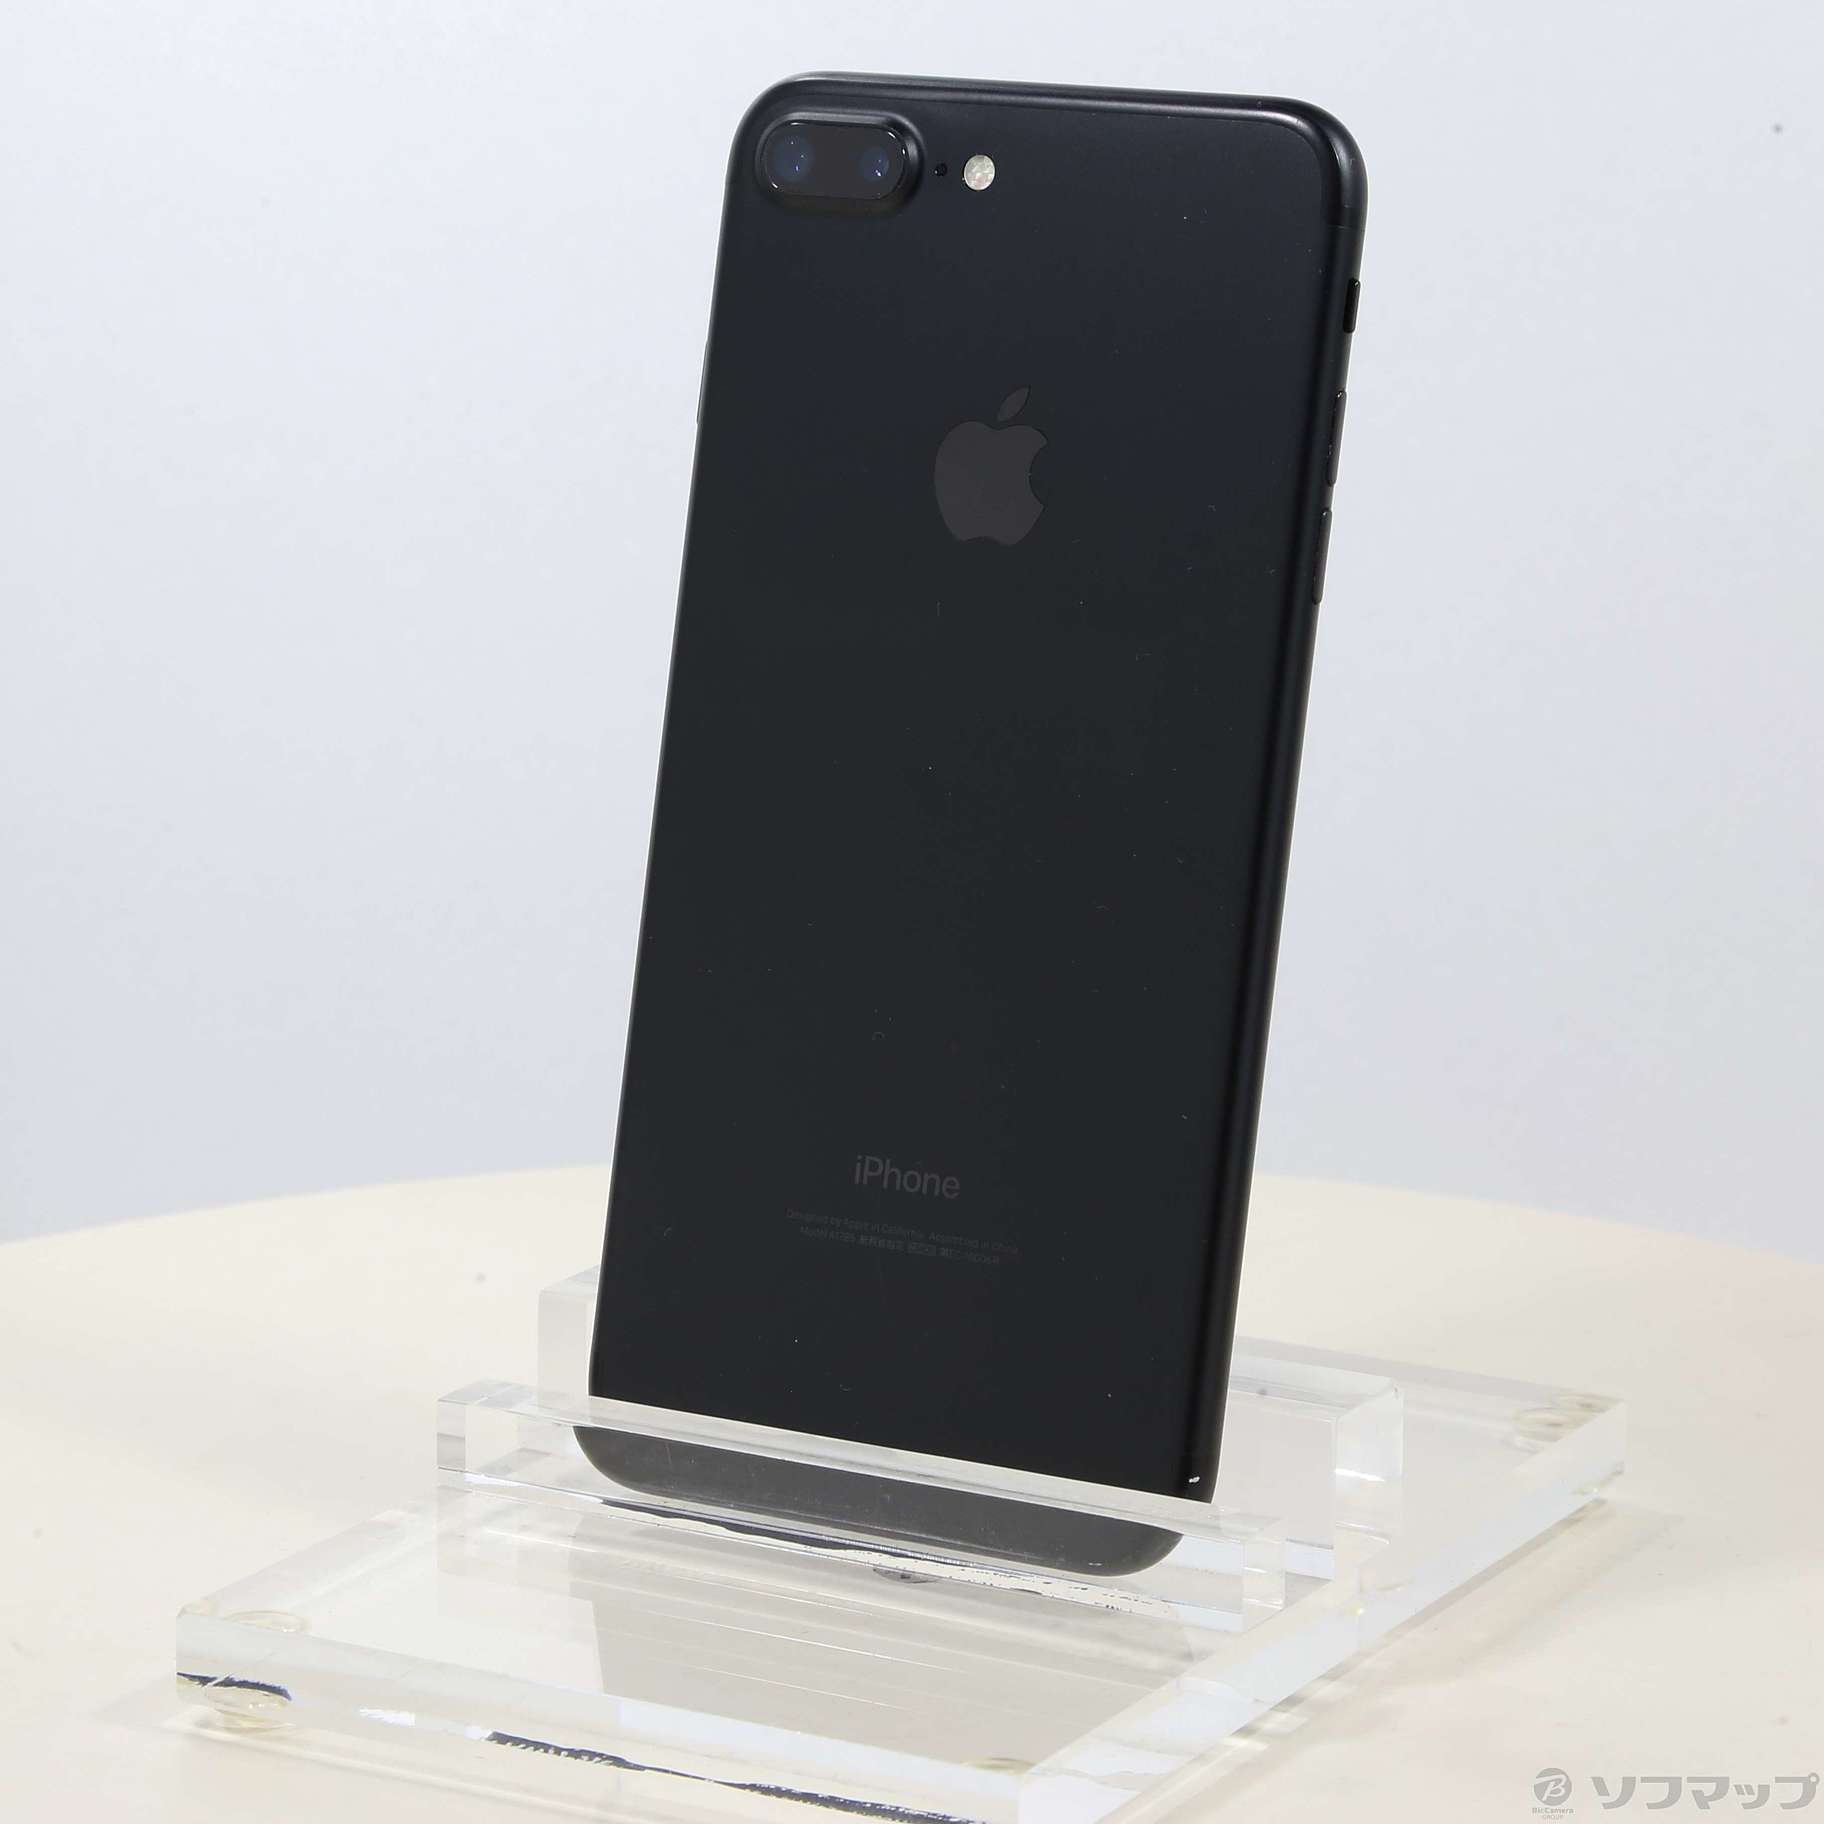 iPhone7 ブラック128GB Softbank - スマートフォン本体